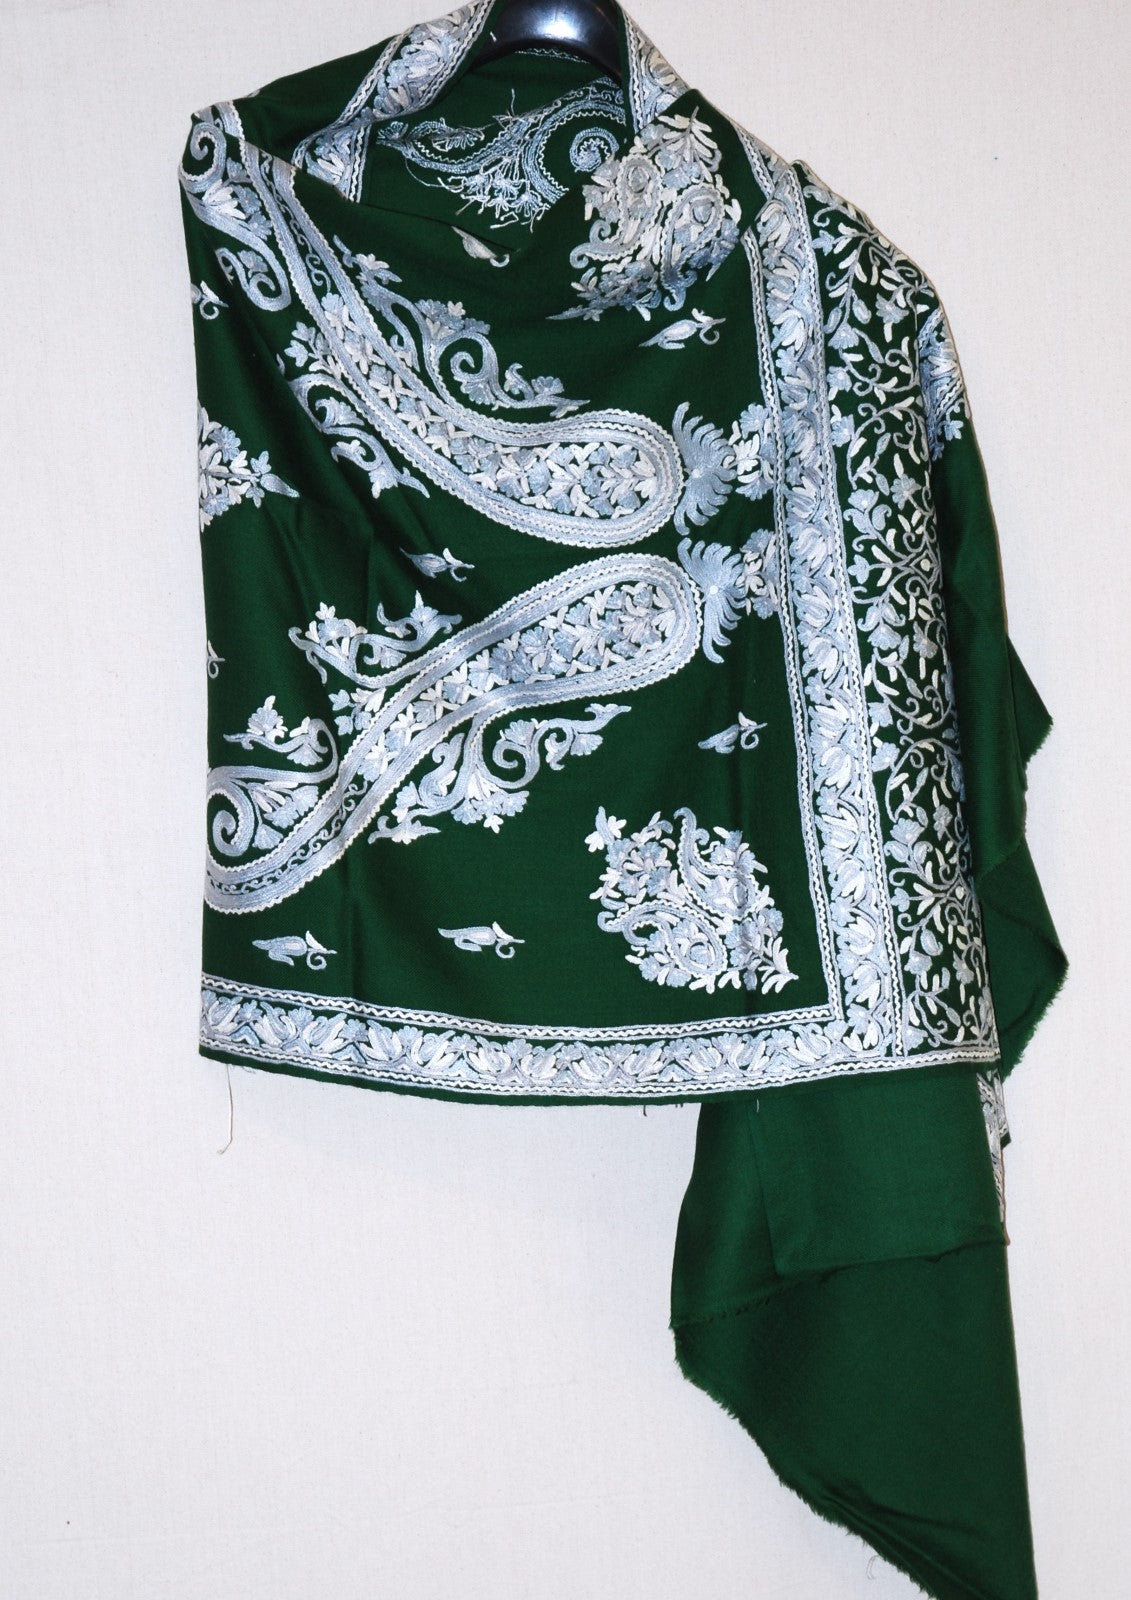 Kashmir Wool Shawl Wrap Throw Green, Grey Embroidery #WS-146